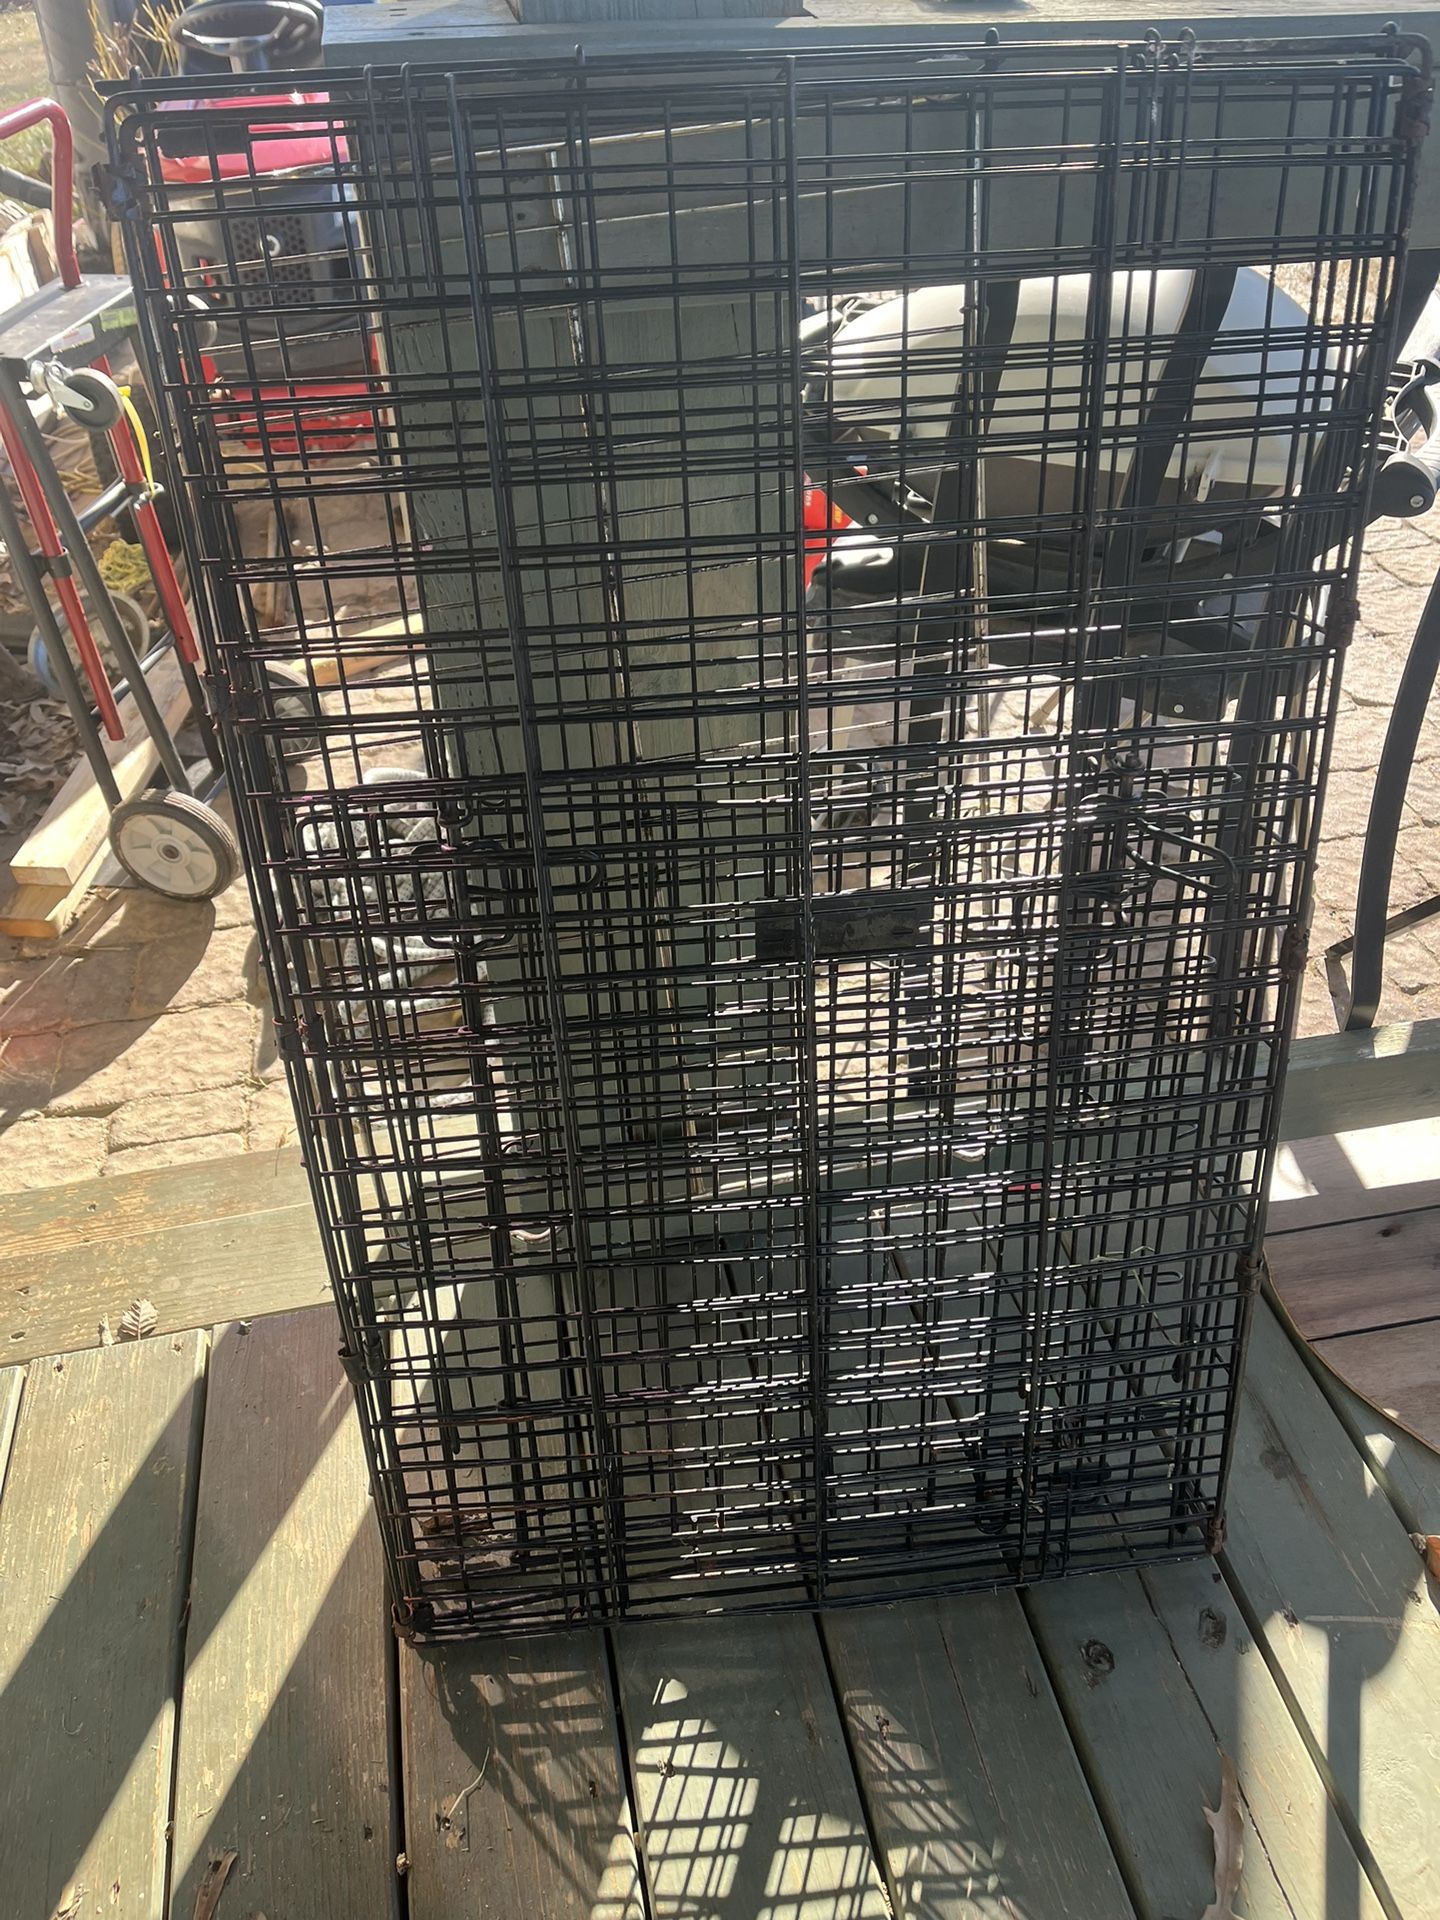 Huge Dog Cage